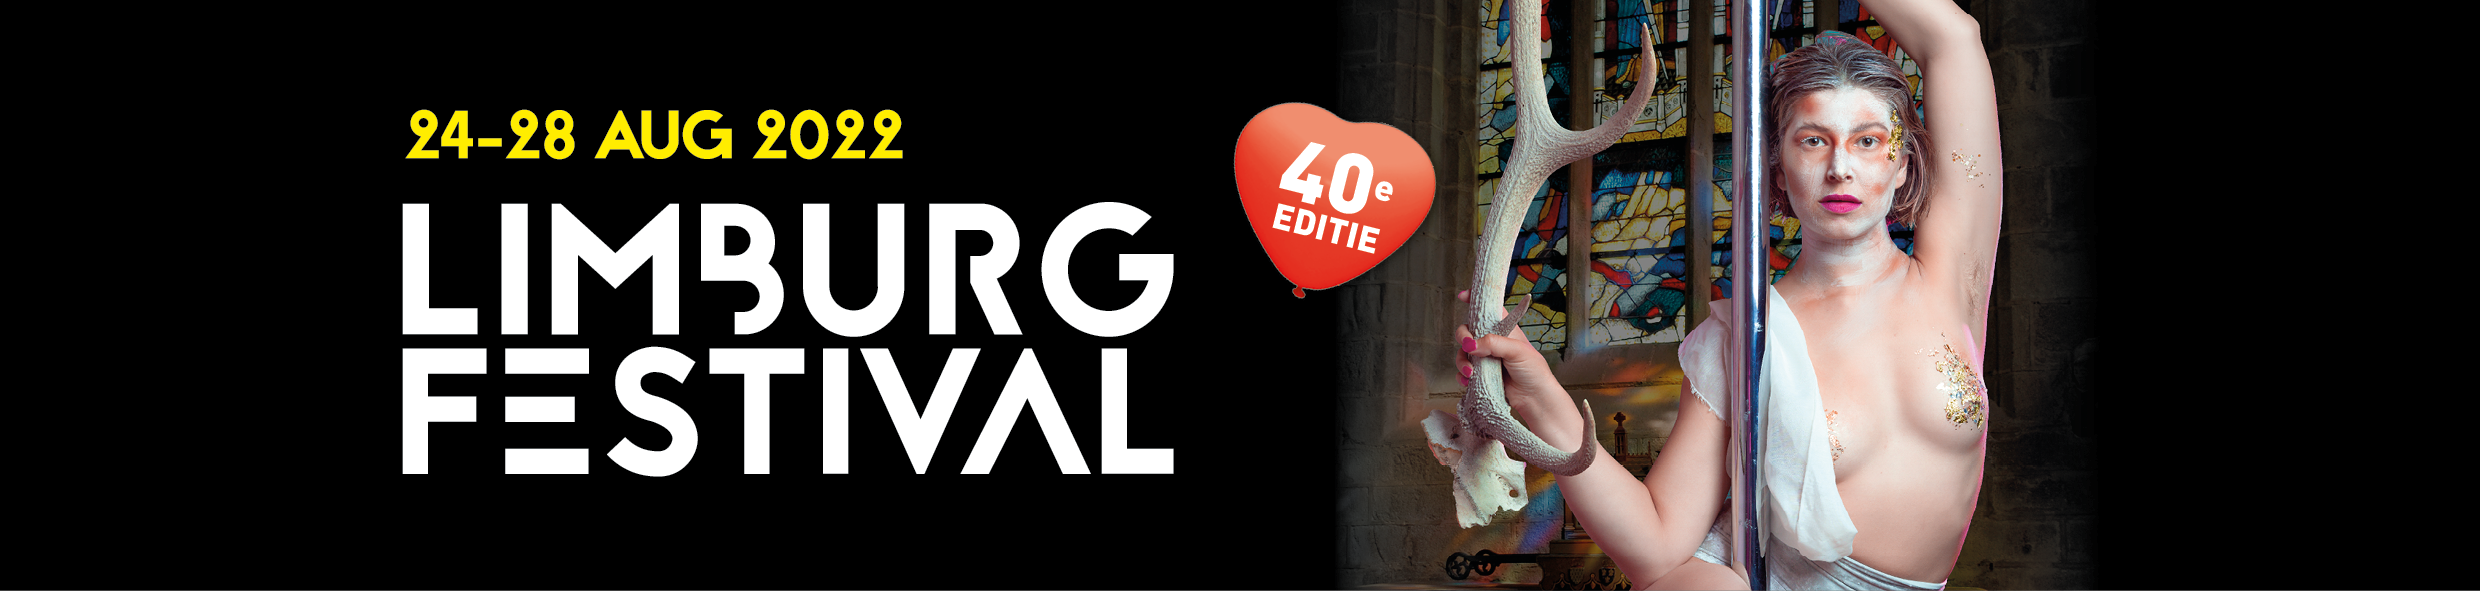 Limburg Festival_website header 2022